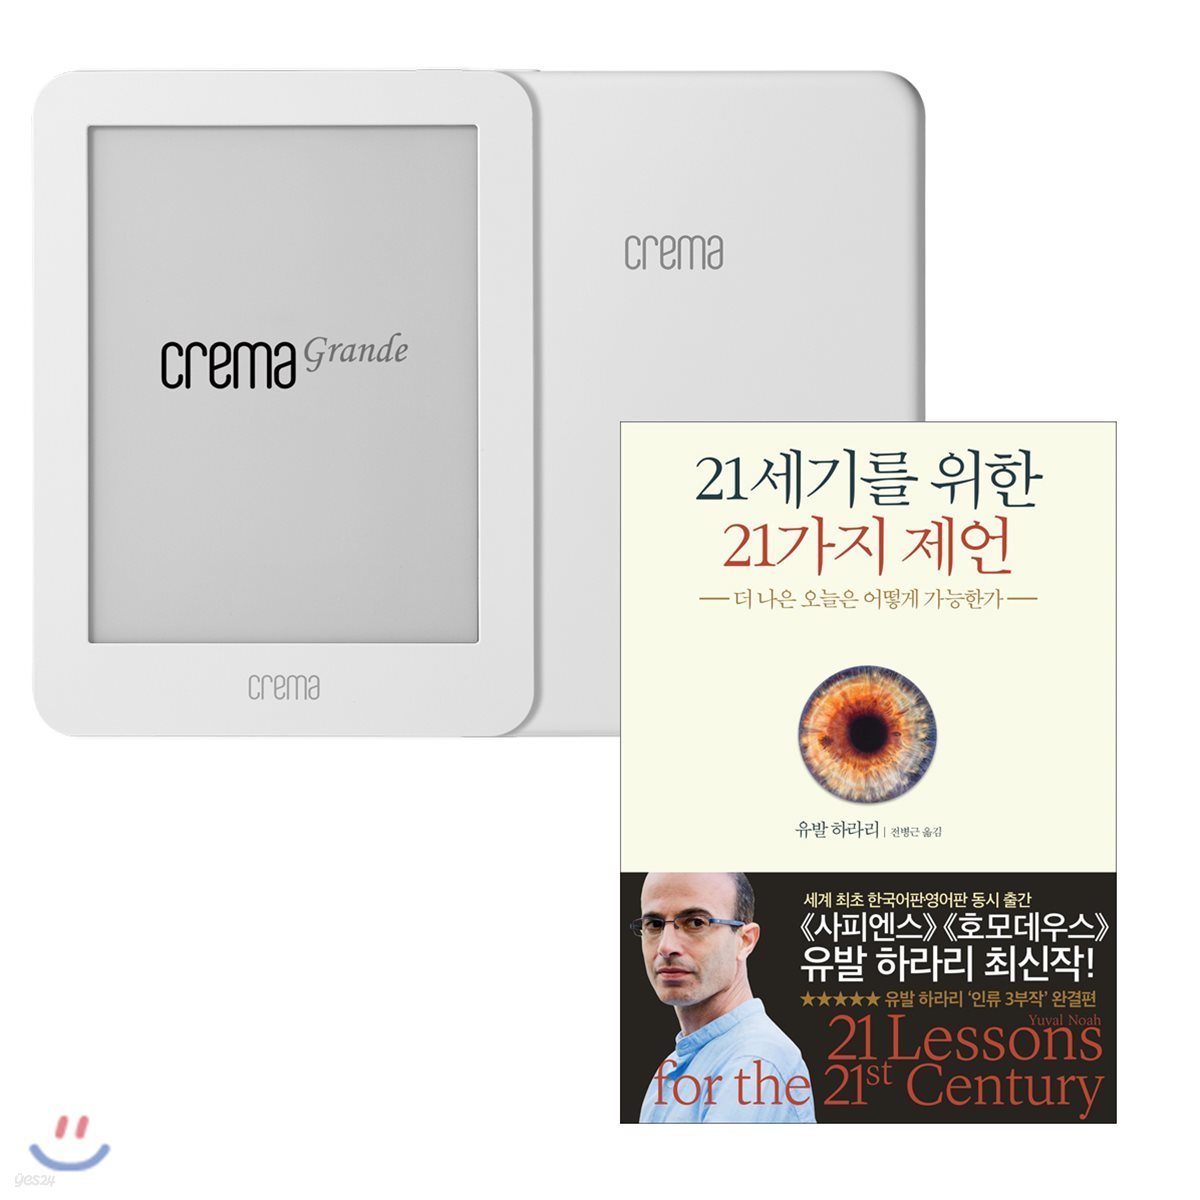 예스24 크레마 그랑데 (crema grande) : 화이트 + 21세기를 위한 21가지 제언 eBook 세트